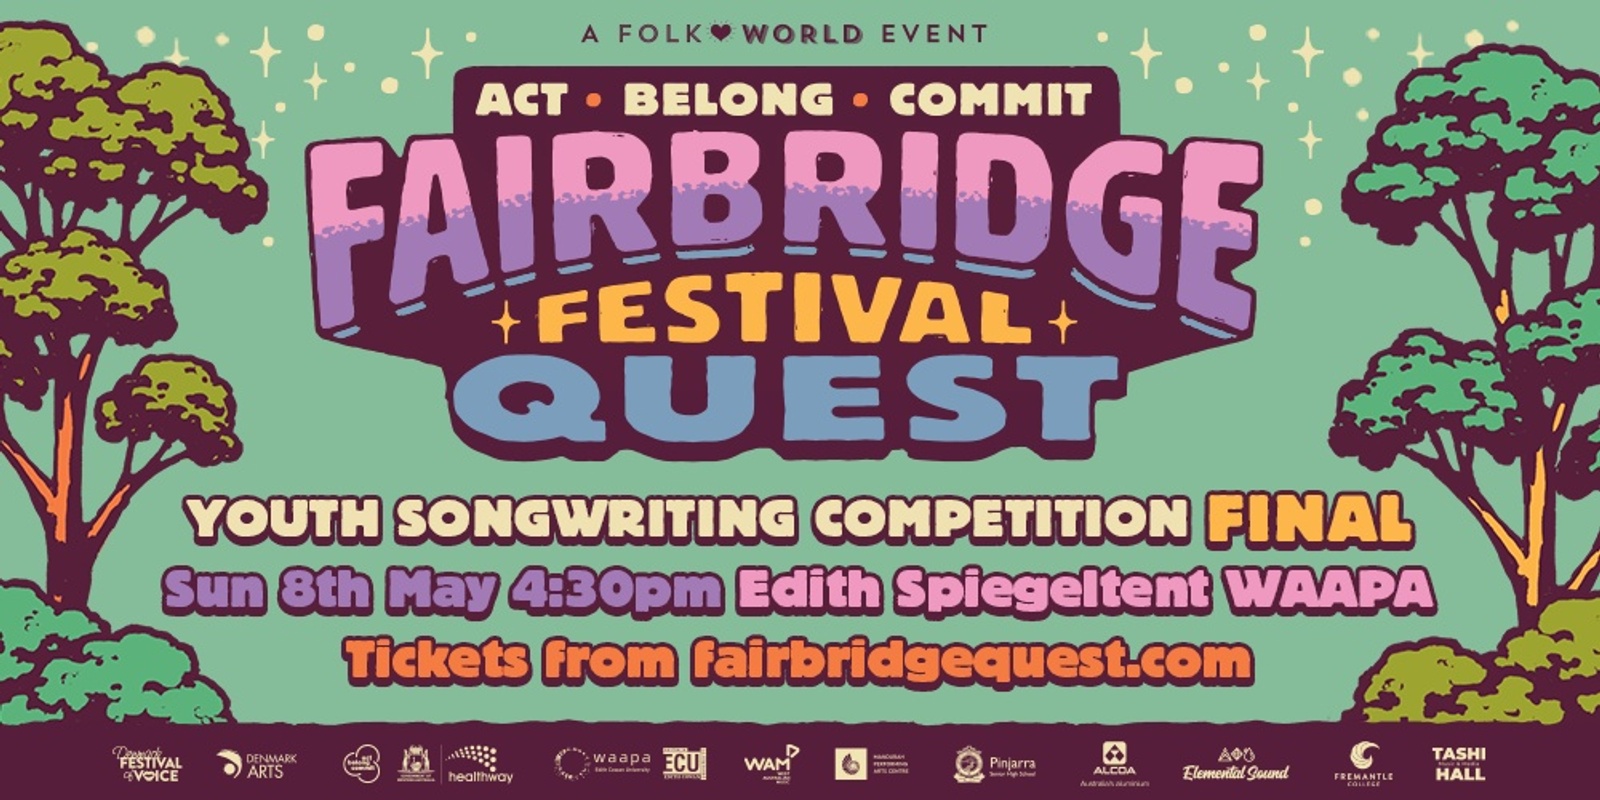 Banner image for Act Belong Commit Fairbridge Festival Quest Final